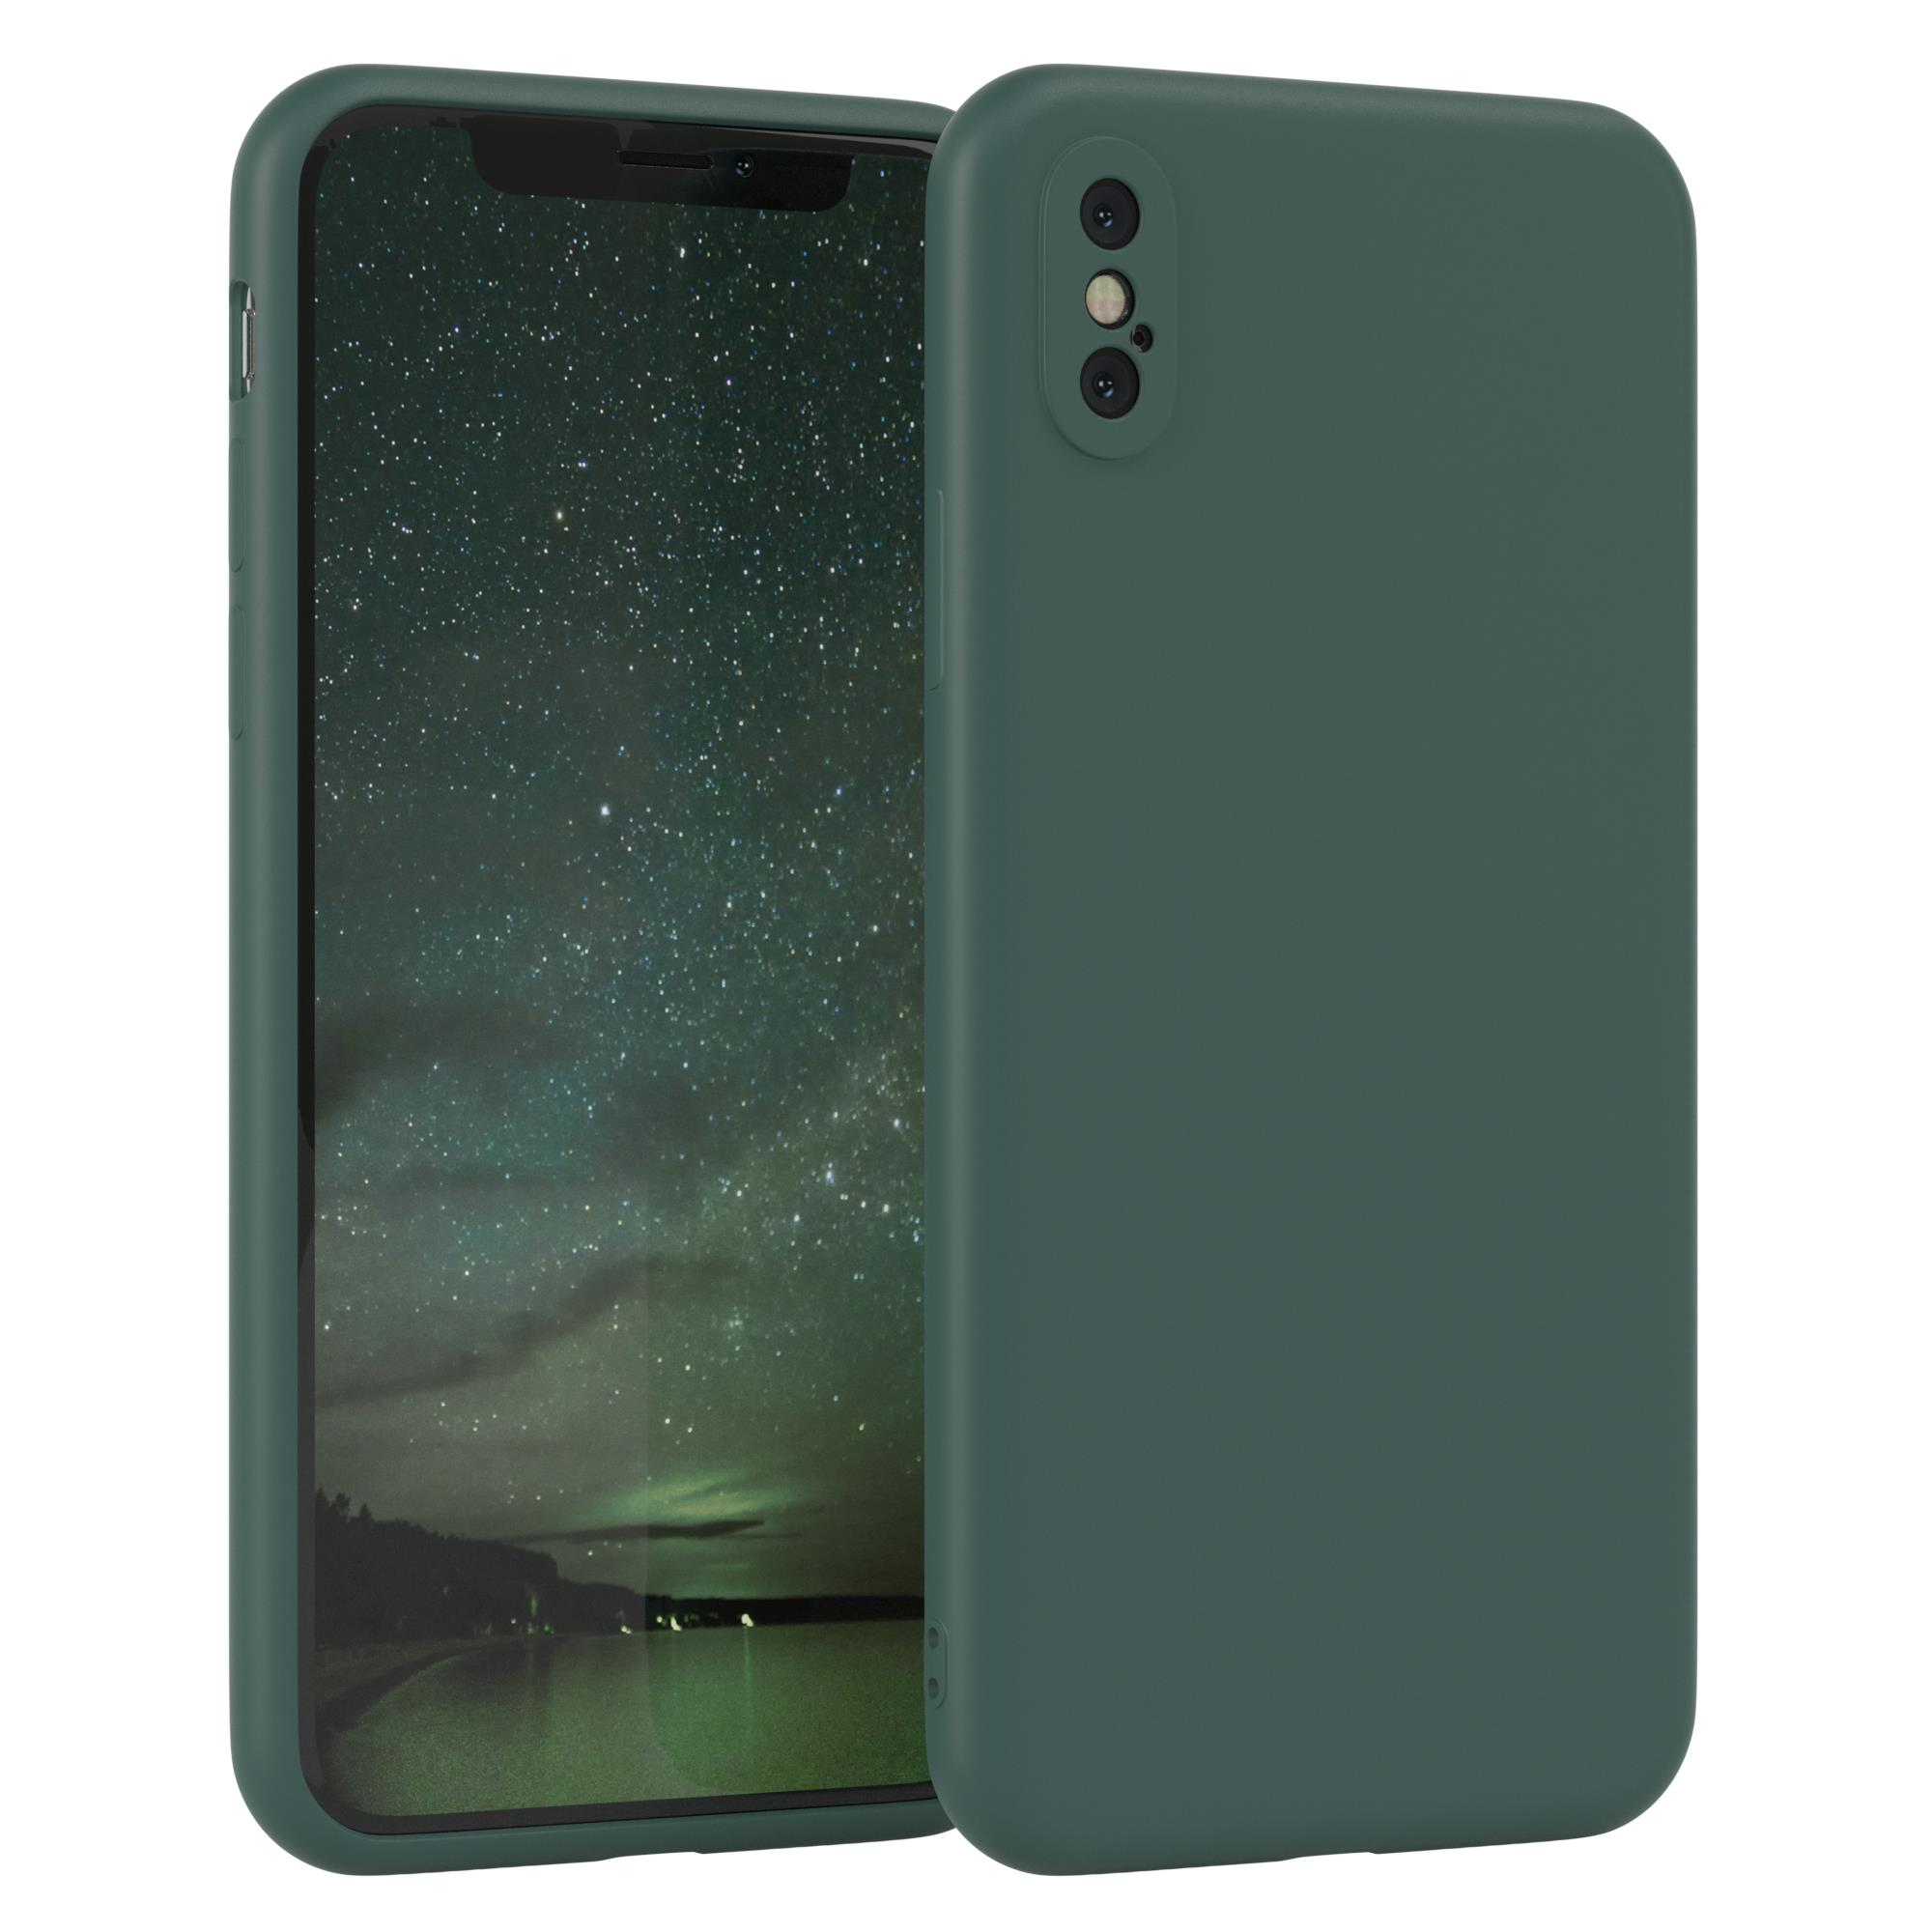 XS, iPhone EAZY Apple, TPU Nachtgrün CASE X Handycase / Silikon / Backcover, Grün Matt,